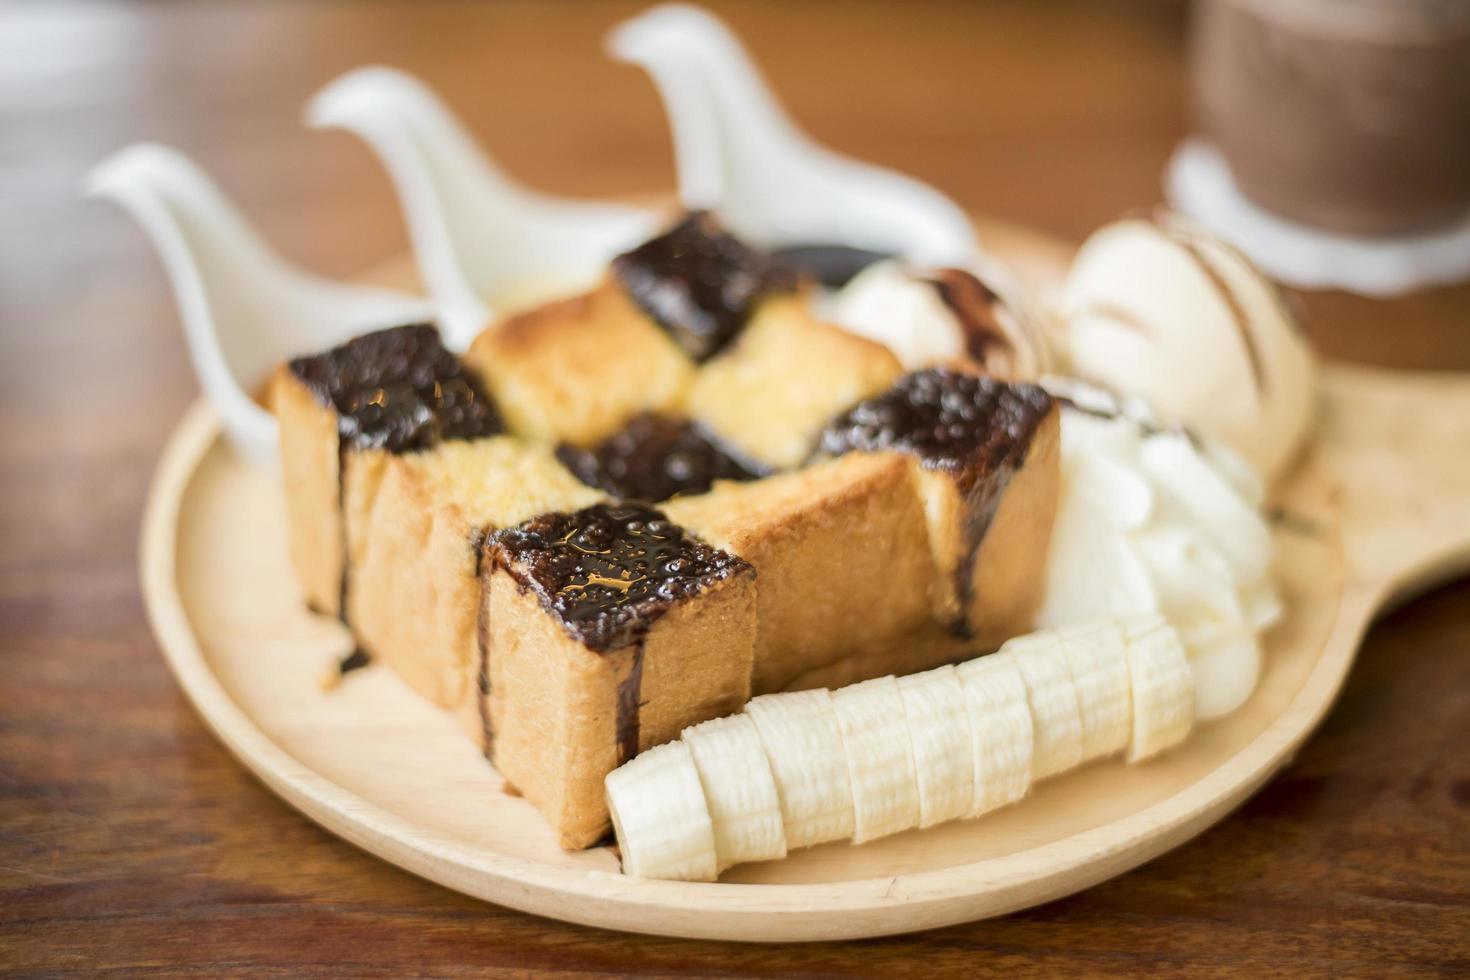 tostada de miel con helado de vainilla, nata montada y sirope de chocolate. servido con banana foto